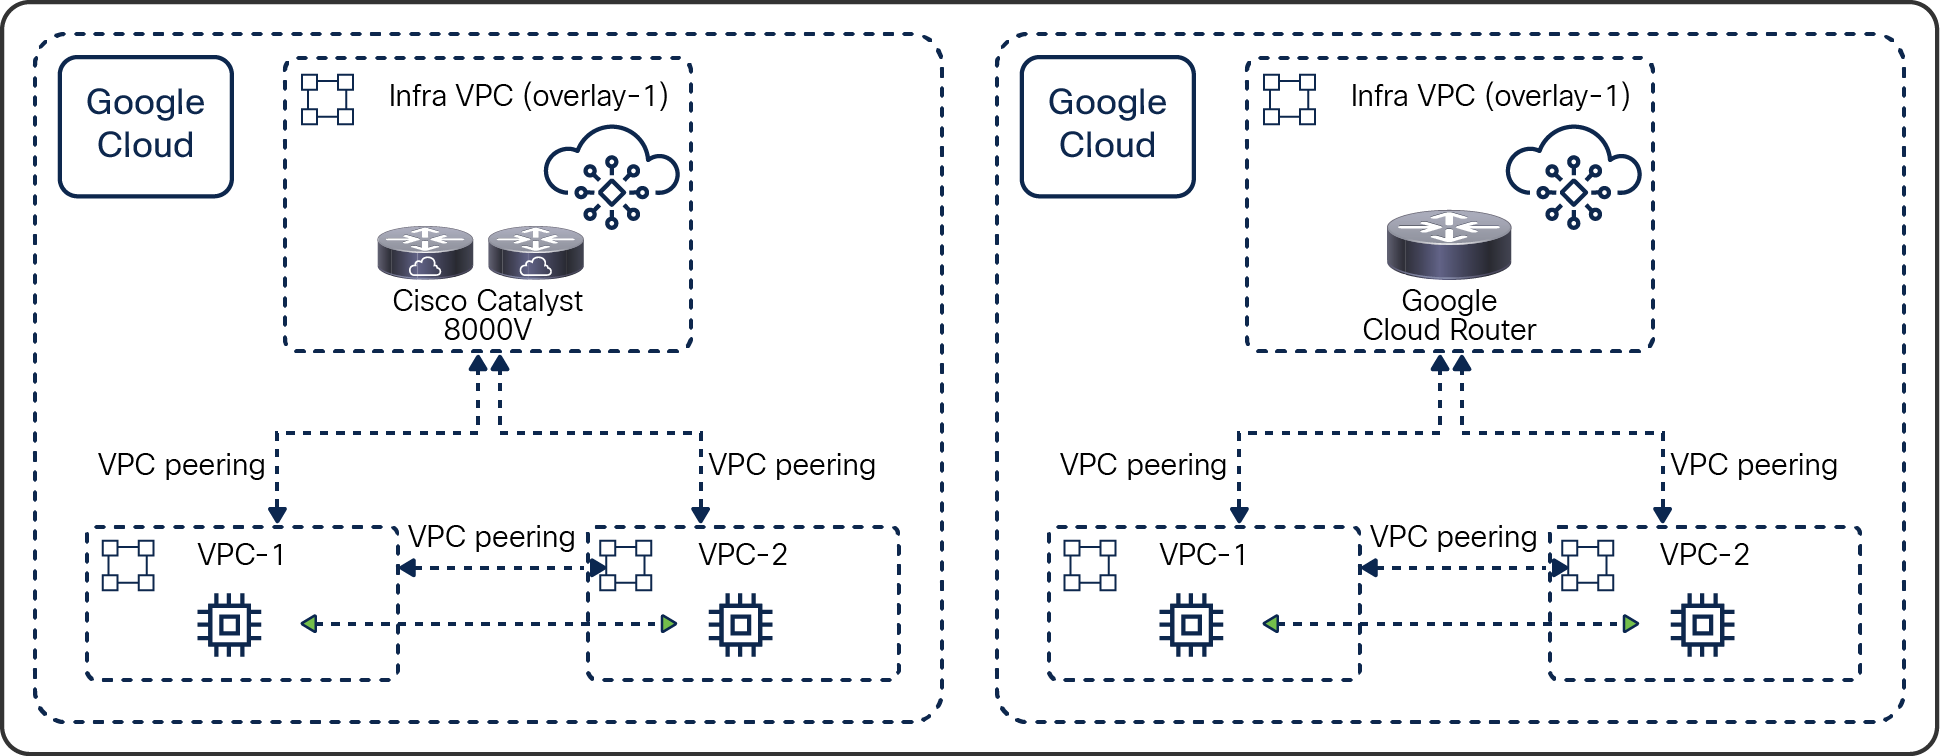 Inside the cloud using Google Cloud VPC network peering